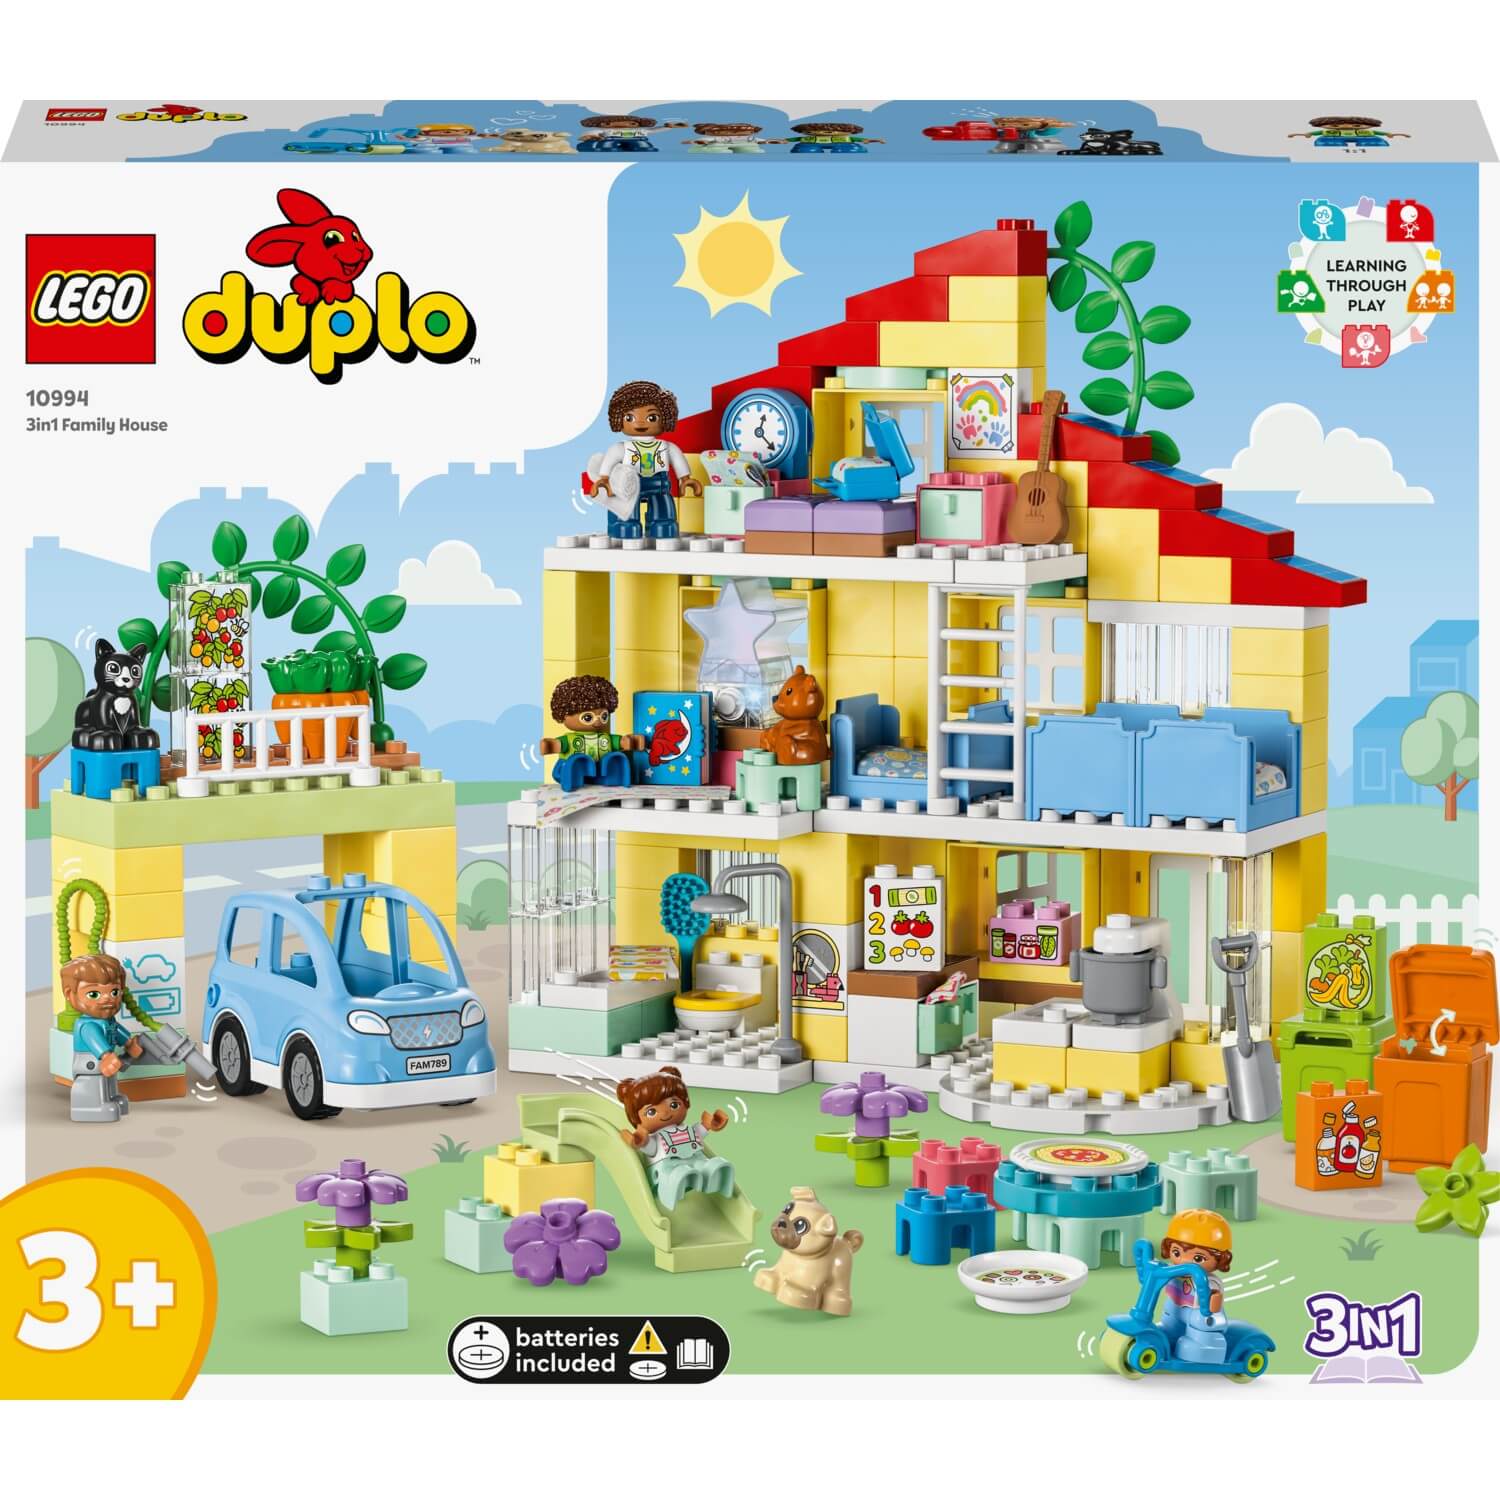 Конструктор LEGO Duplo 3-in-1 Семейный дом 10994, 218 деталей конструктор lego duplo 10994 семейный дом 3в1